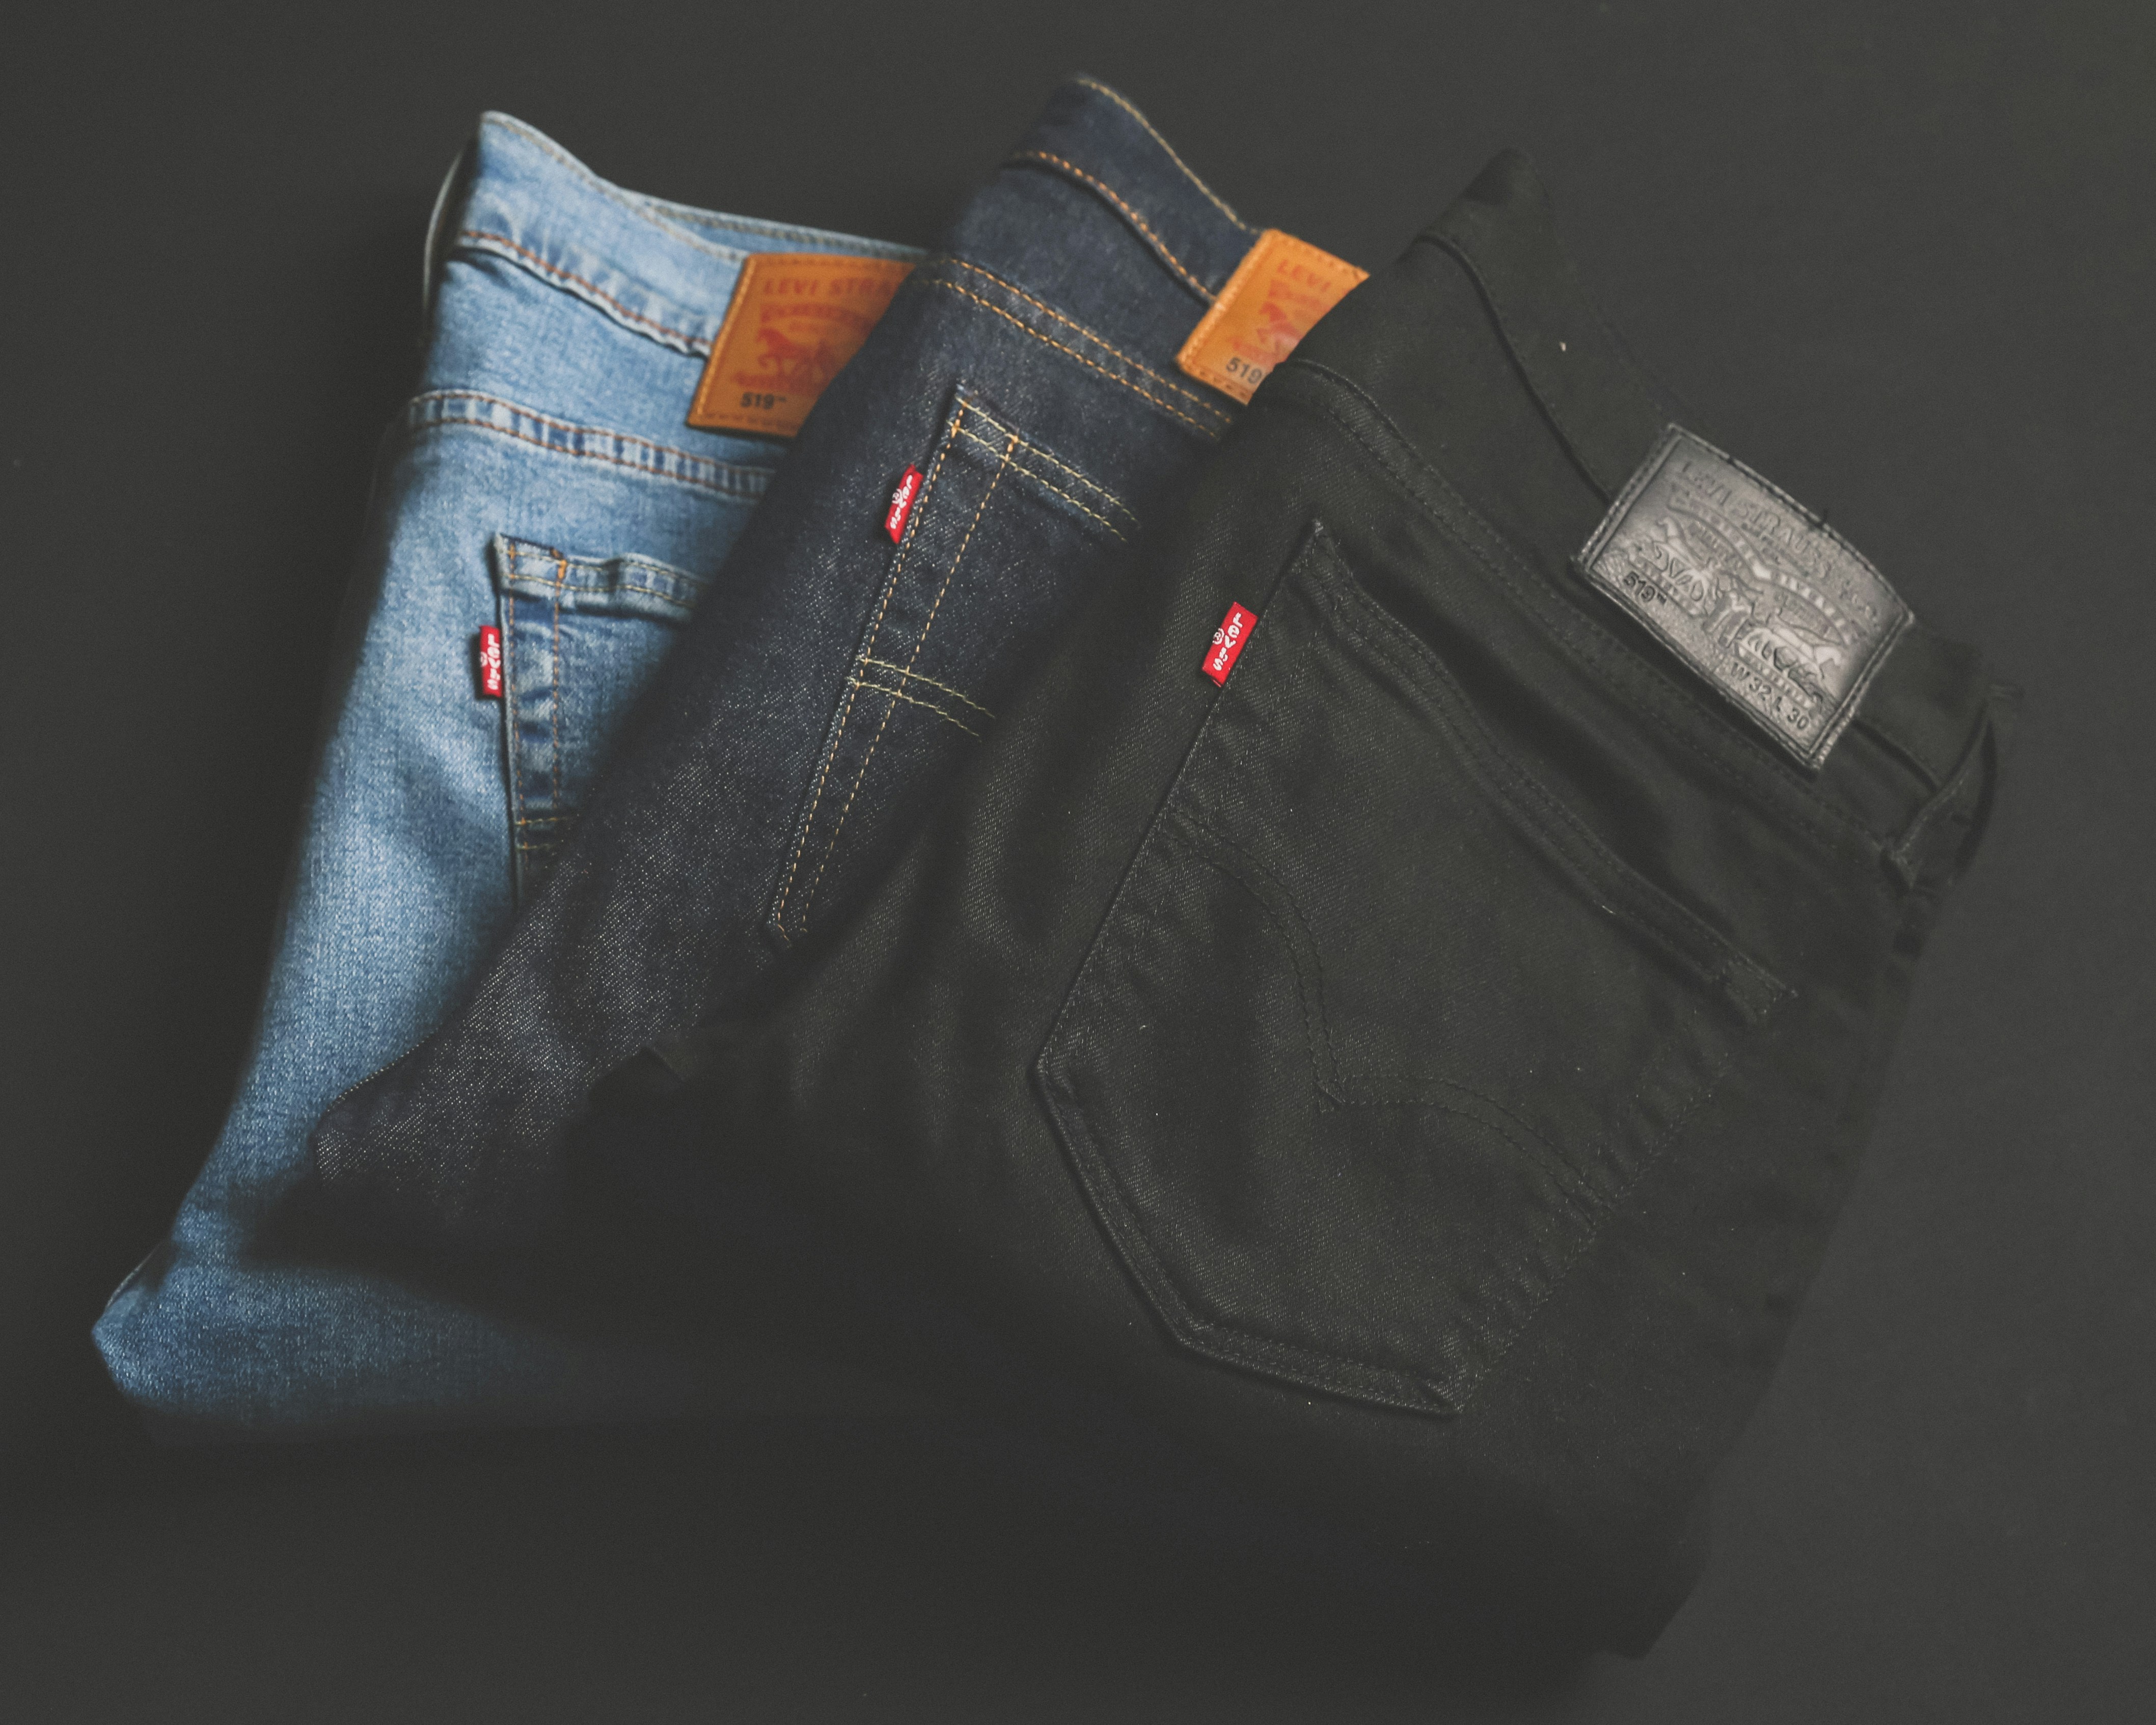 jeans ke design